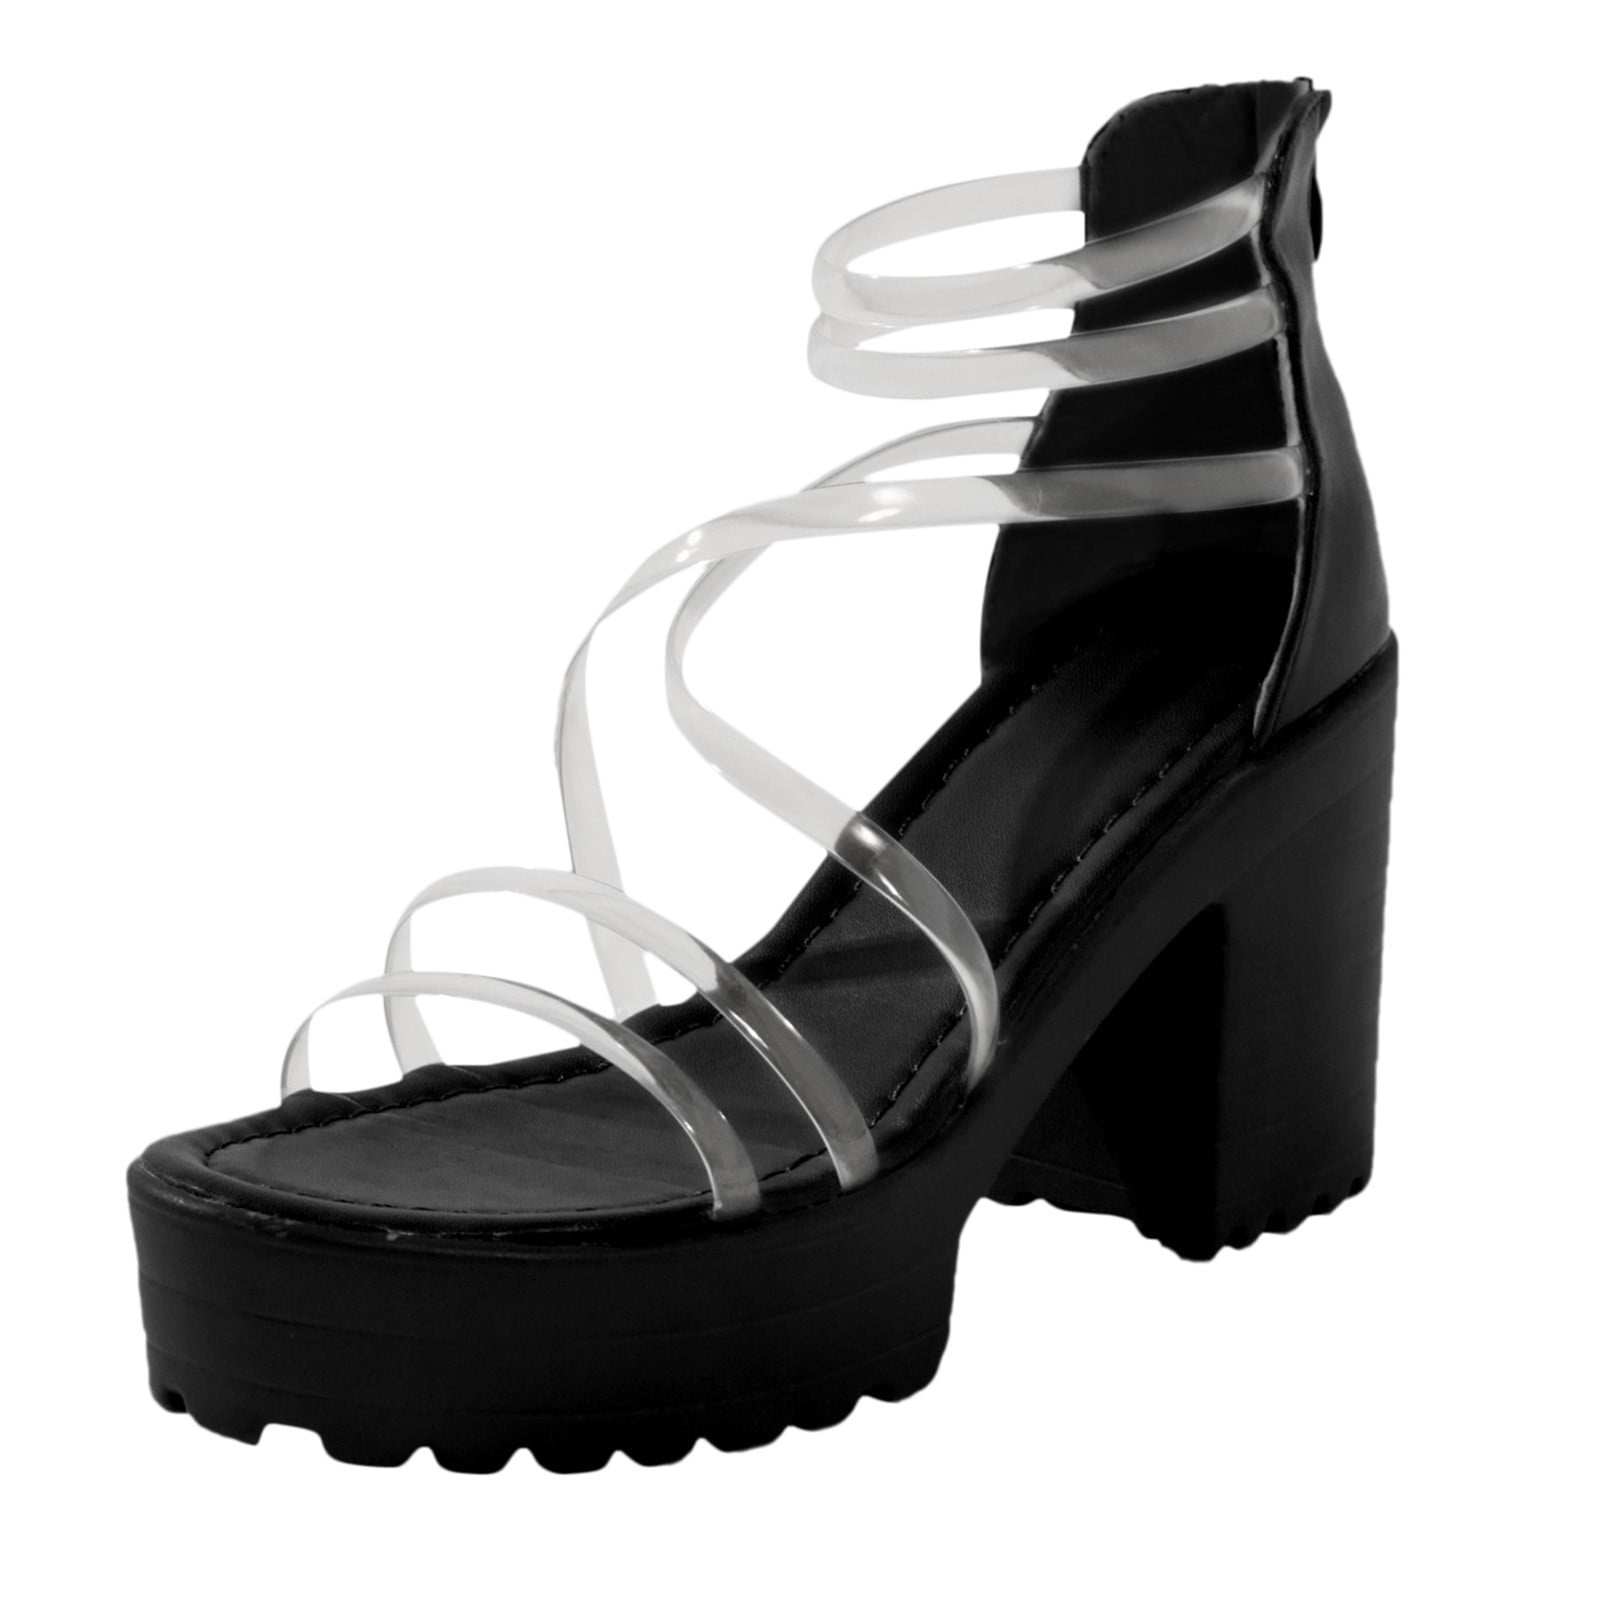 Sandals Omen Women's Chunky Heels Zippered Waterproof Platform High ...